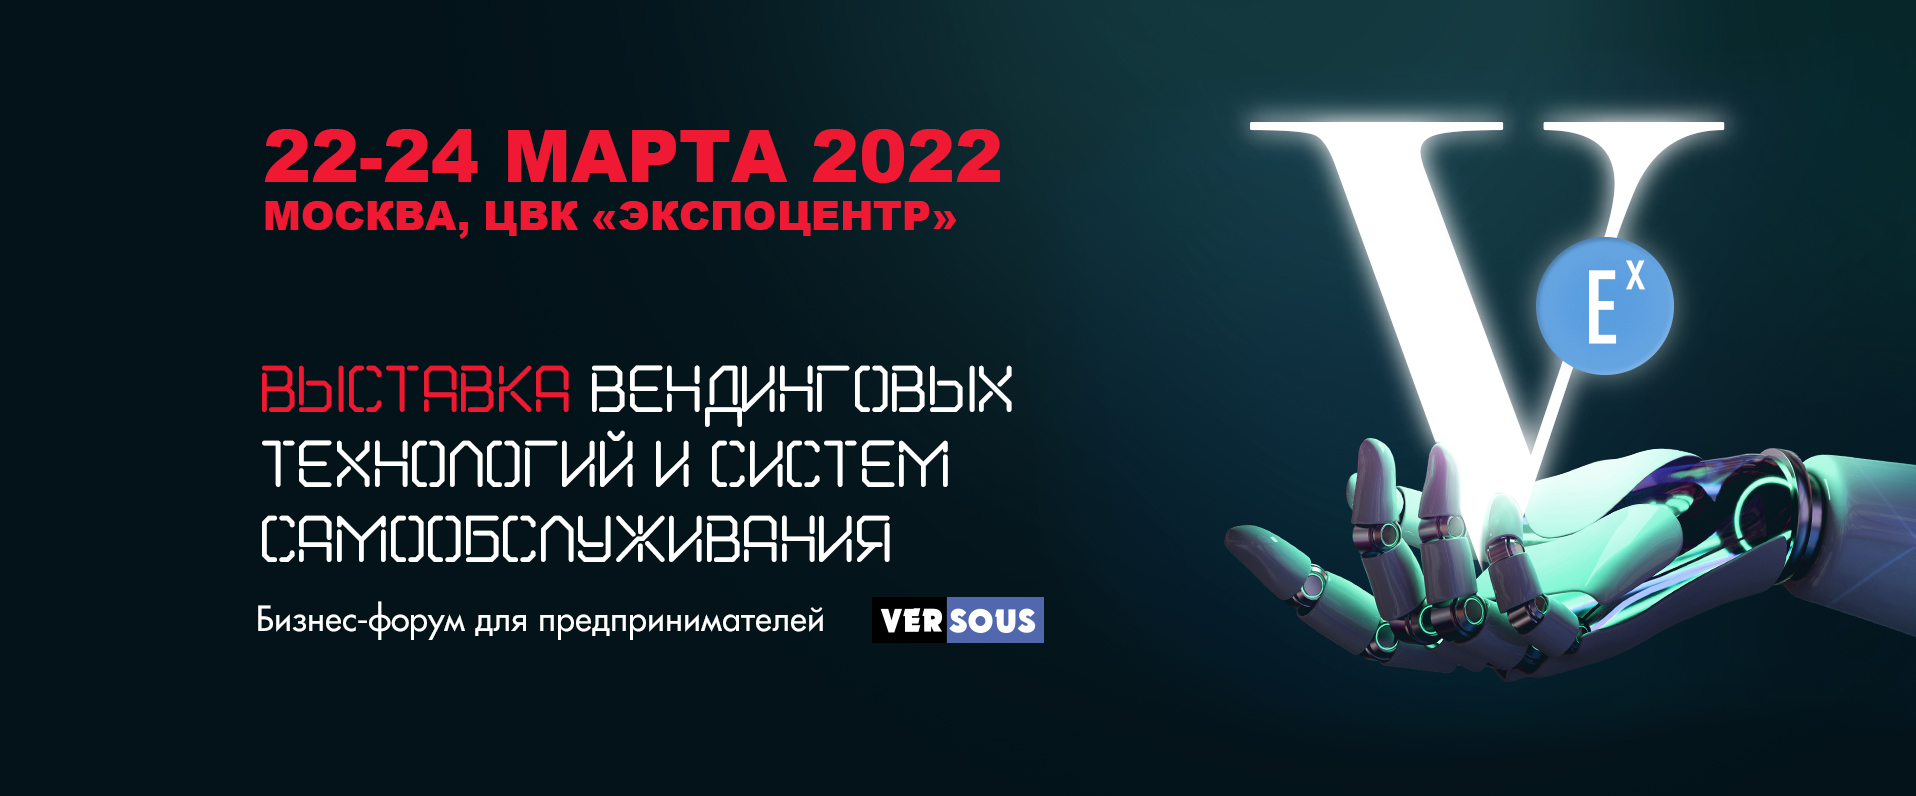 Участие в выставке Vendexpo 2022